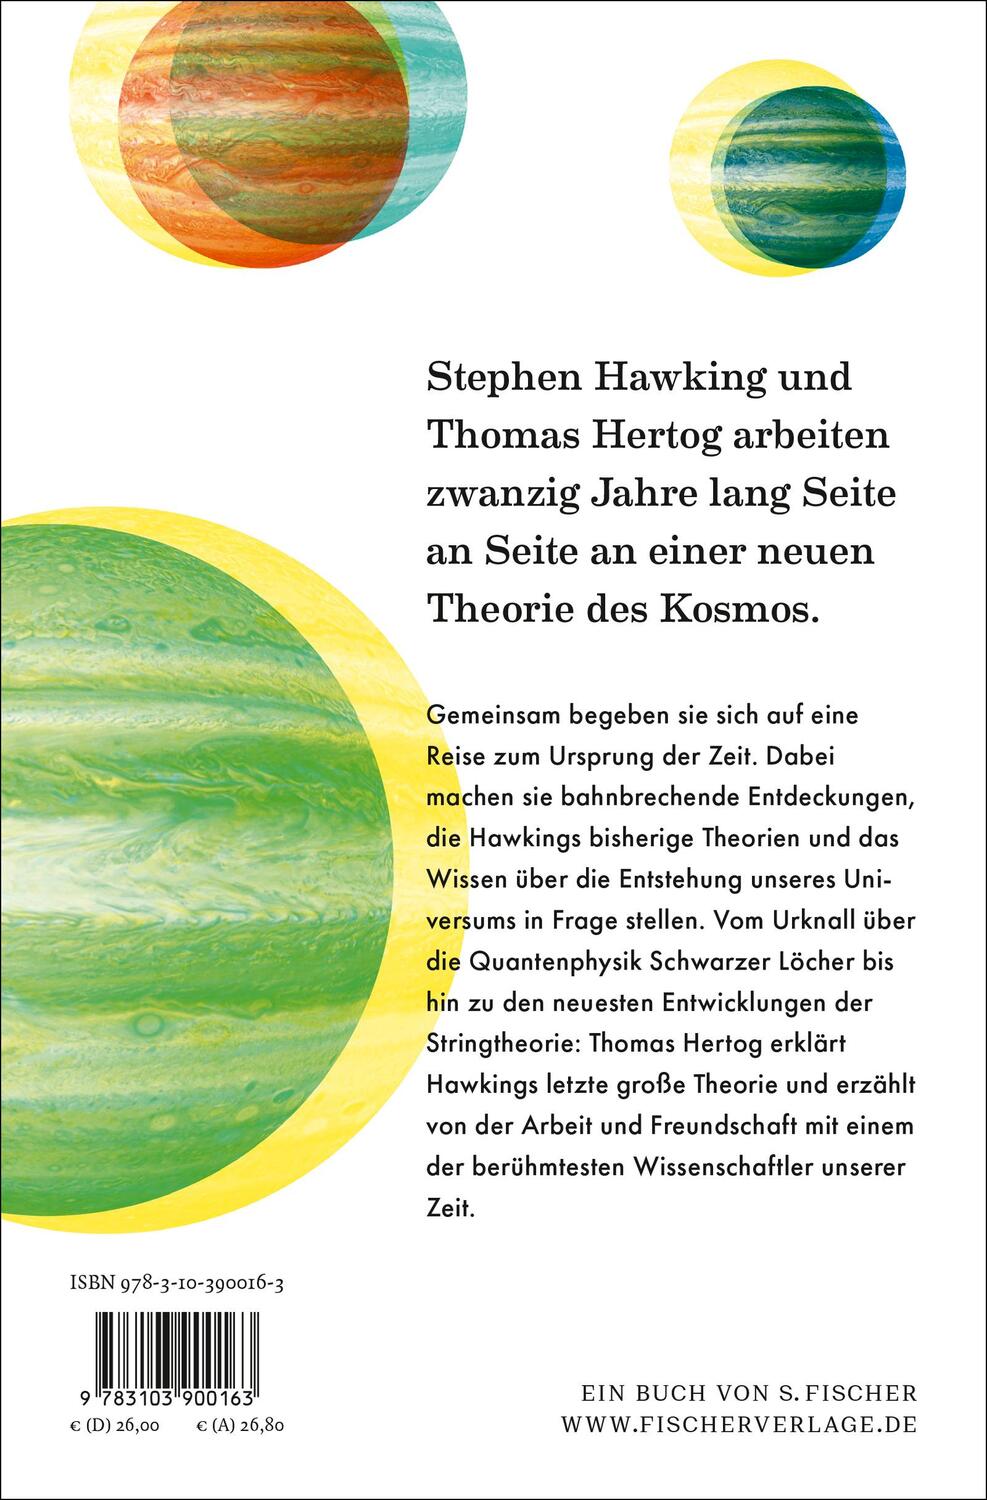 Rückseite: 9783103900163 | Der Ursprung der Zeit - Mein Weg mit Stephen Hawking zu einer neuen...